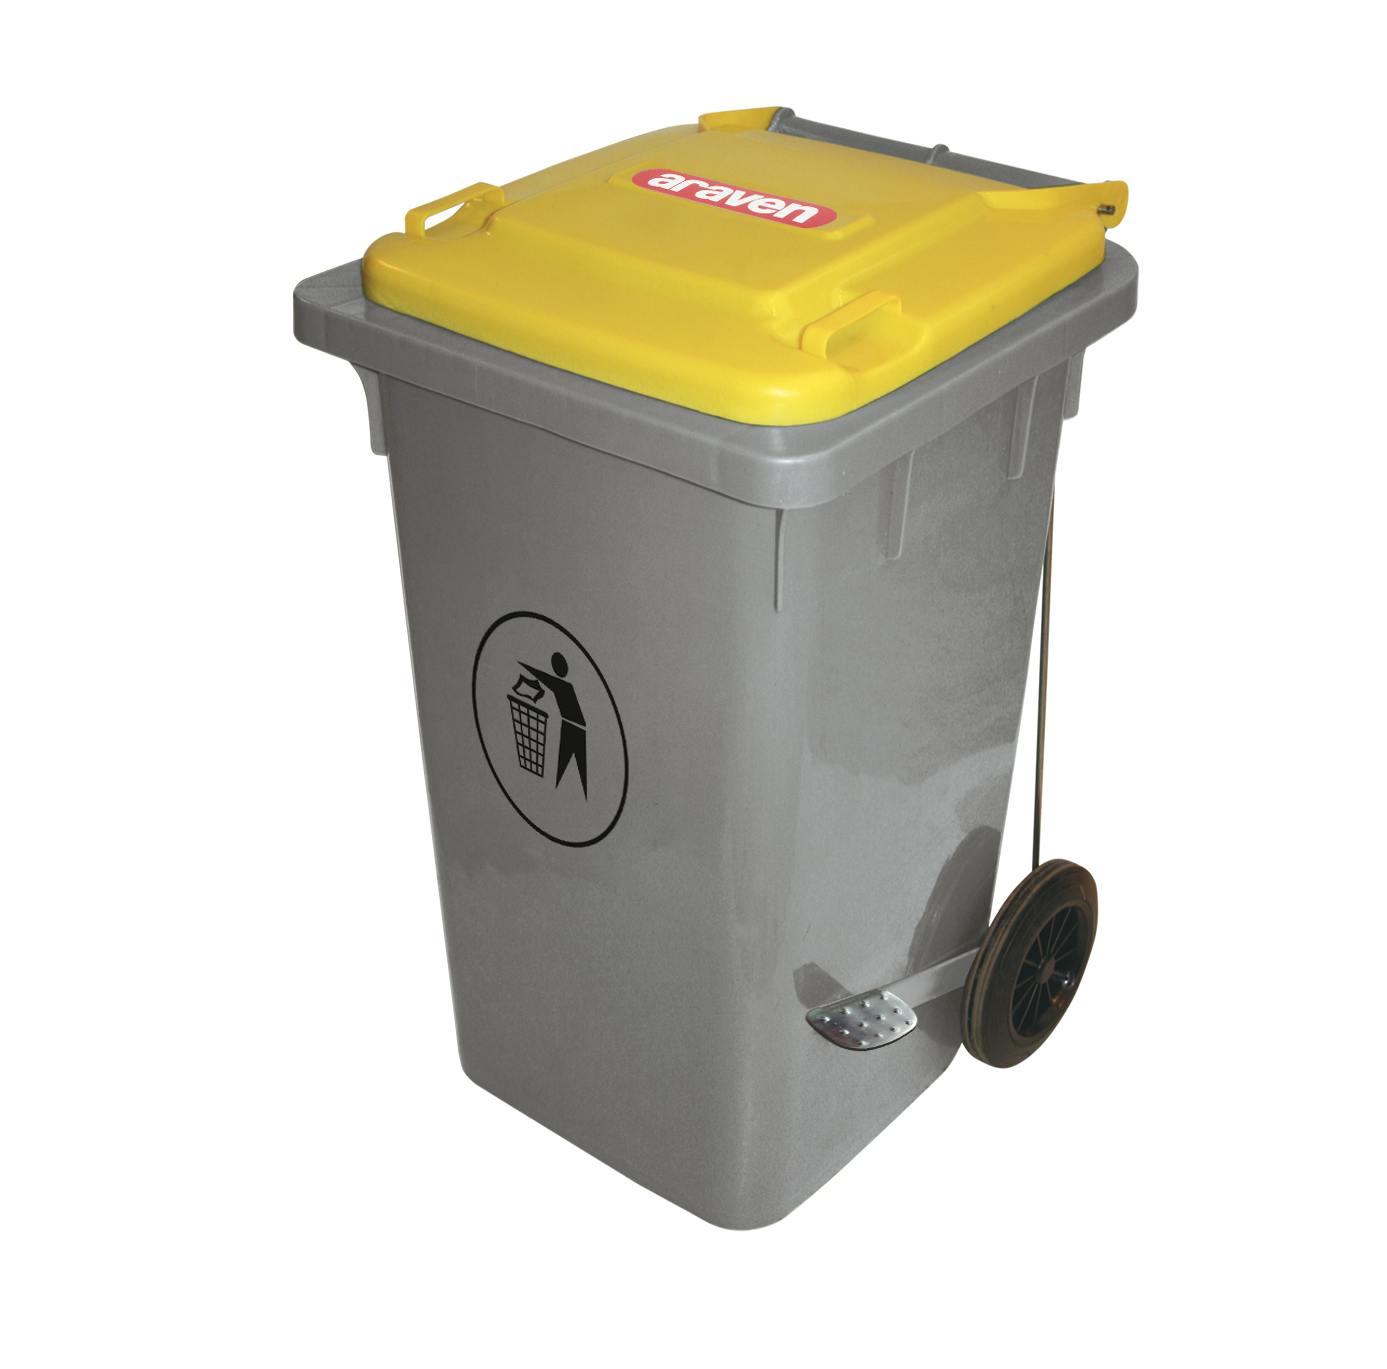 Cubo basura con pedal 25L amarillo - Araven